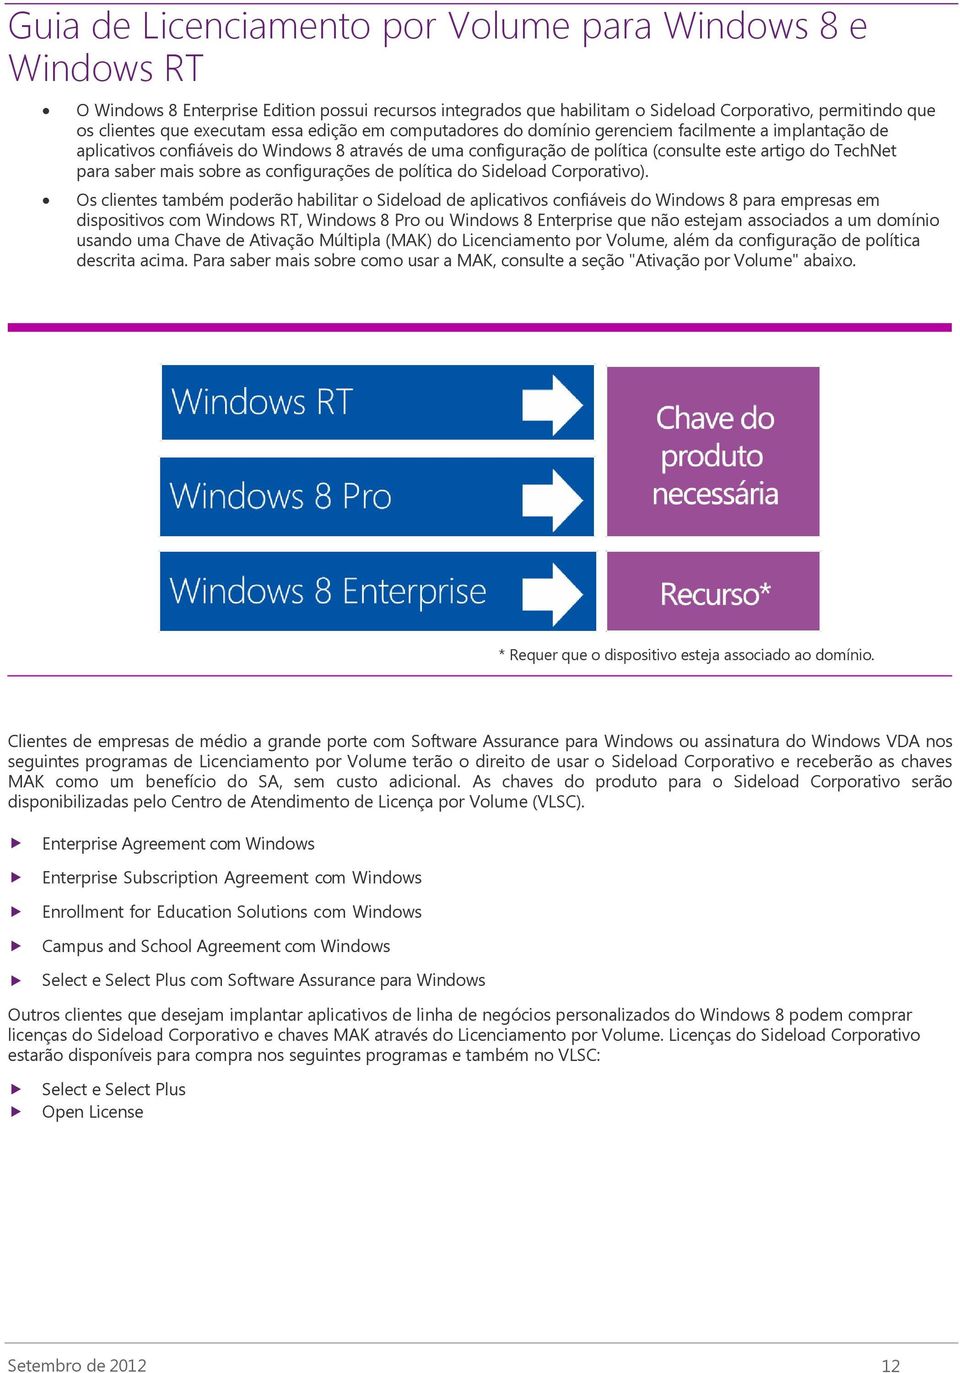 Os clientes também poderão habilitar o Sideload de aplicativos confiáveis do Windows 8 para empresas em dispositivos com, Windows 8 Pro ou Windows 8 Enterprise que não estejam associados a um domínio